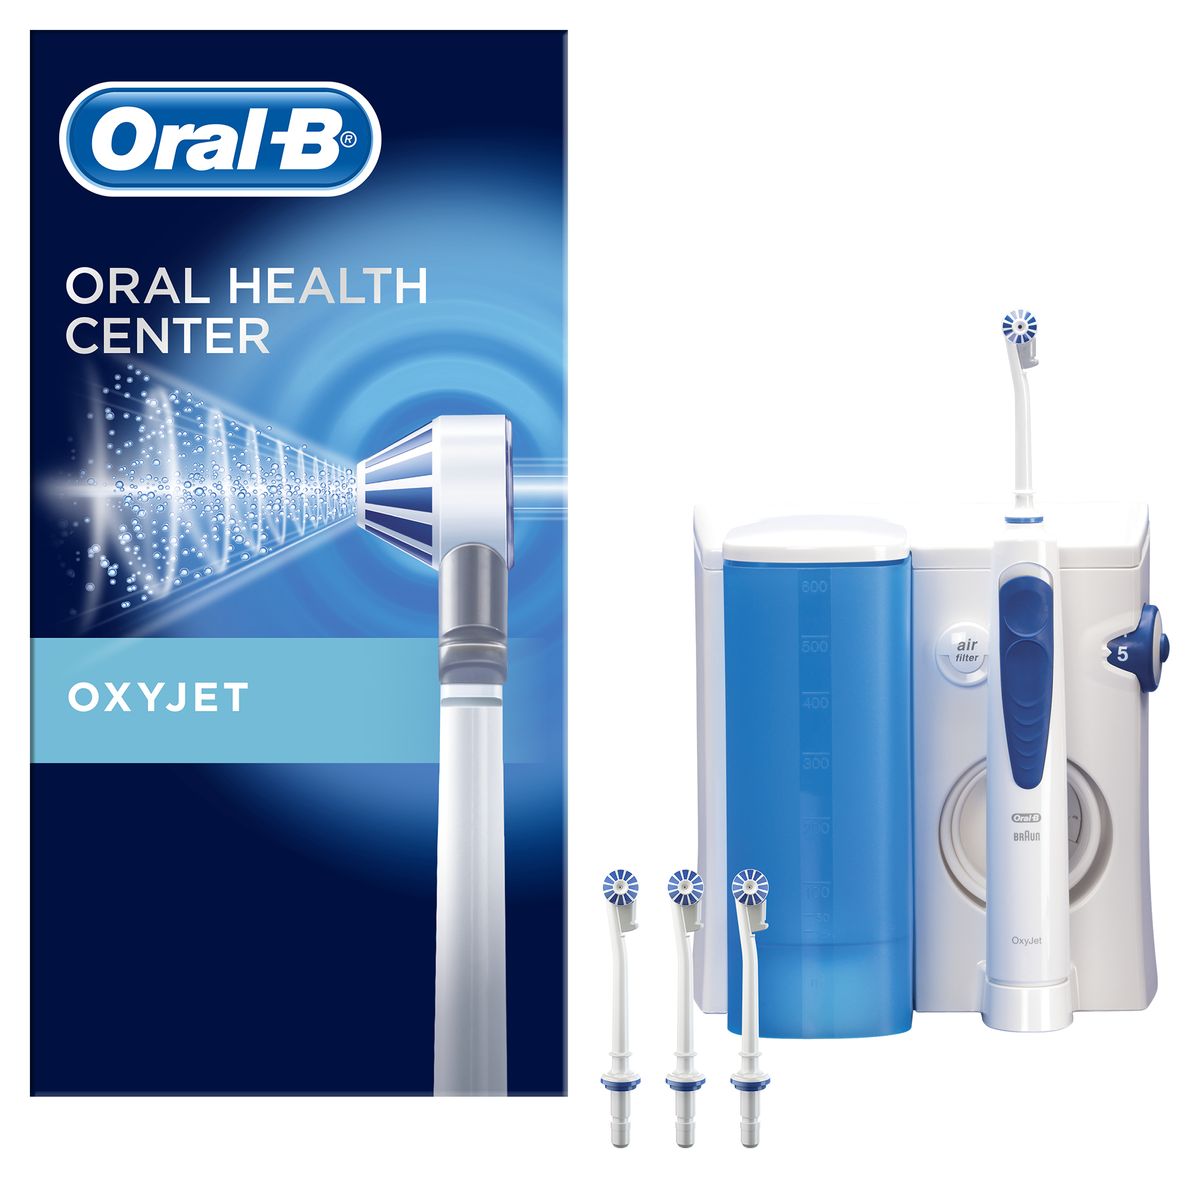 Oral-B Oral-B Professional Care OxyJet Oral Care